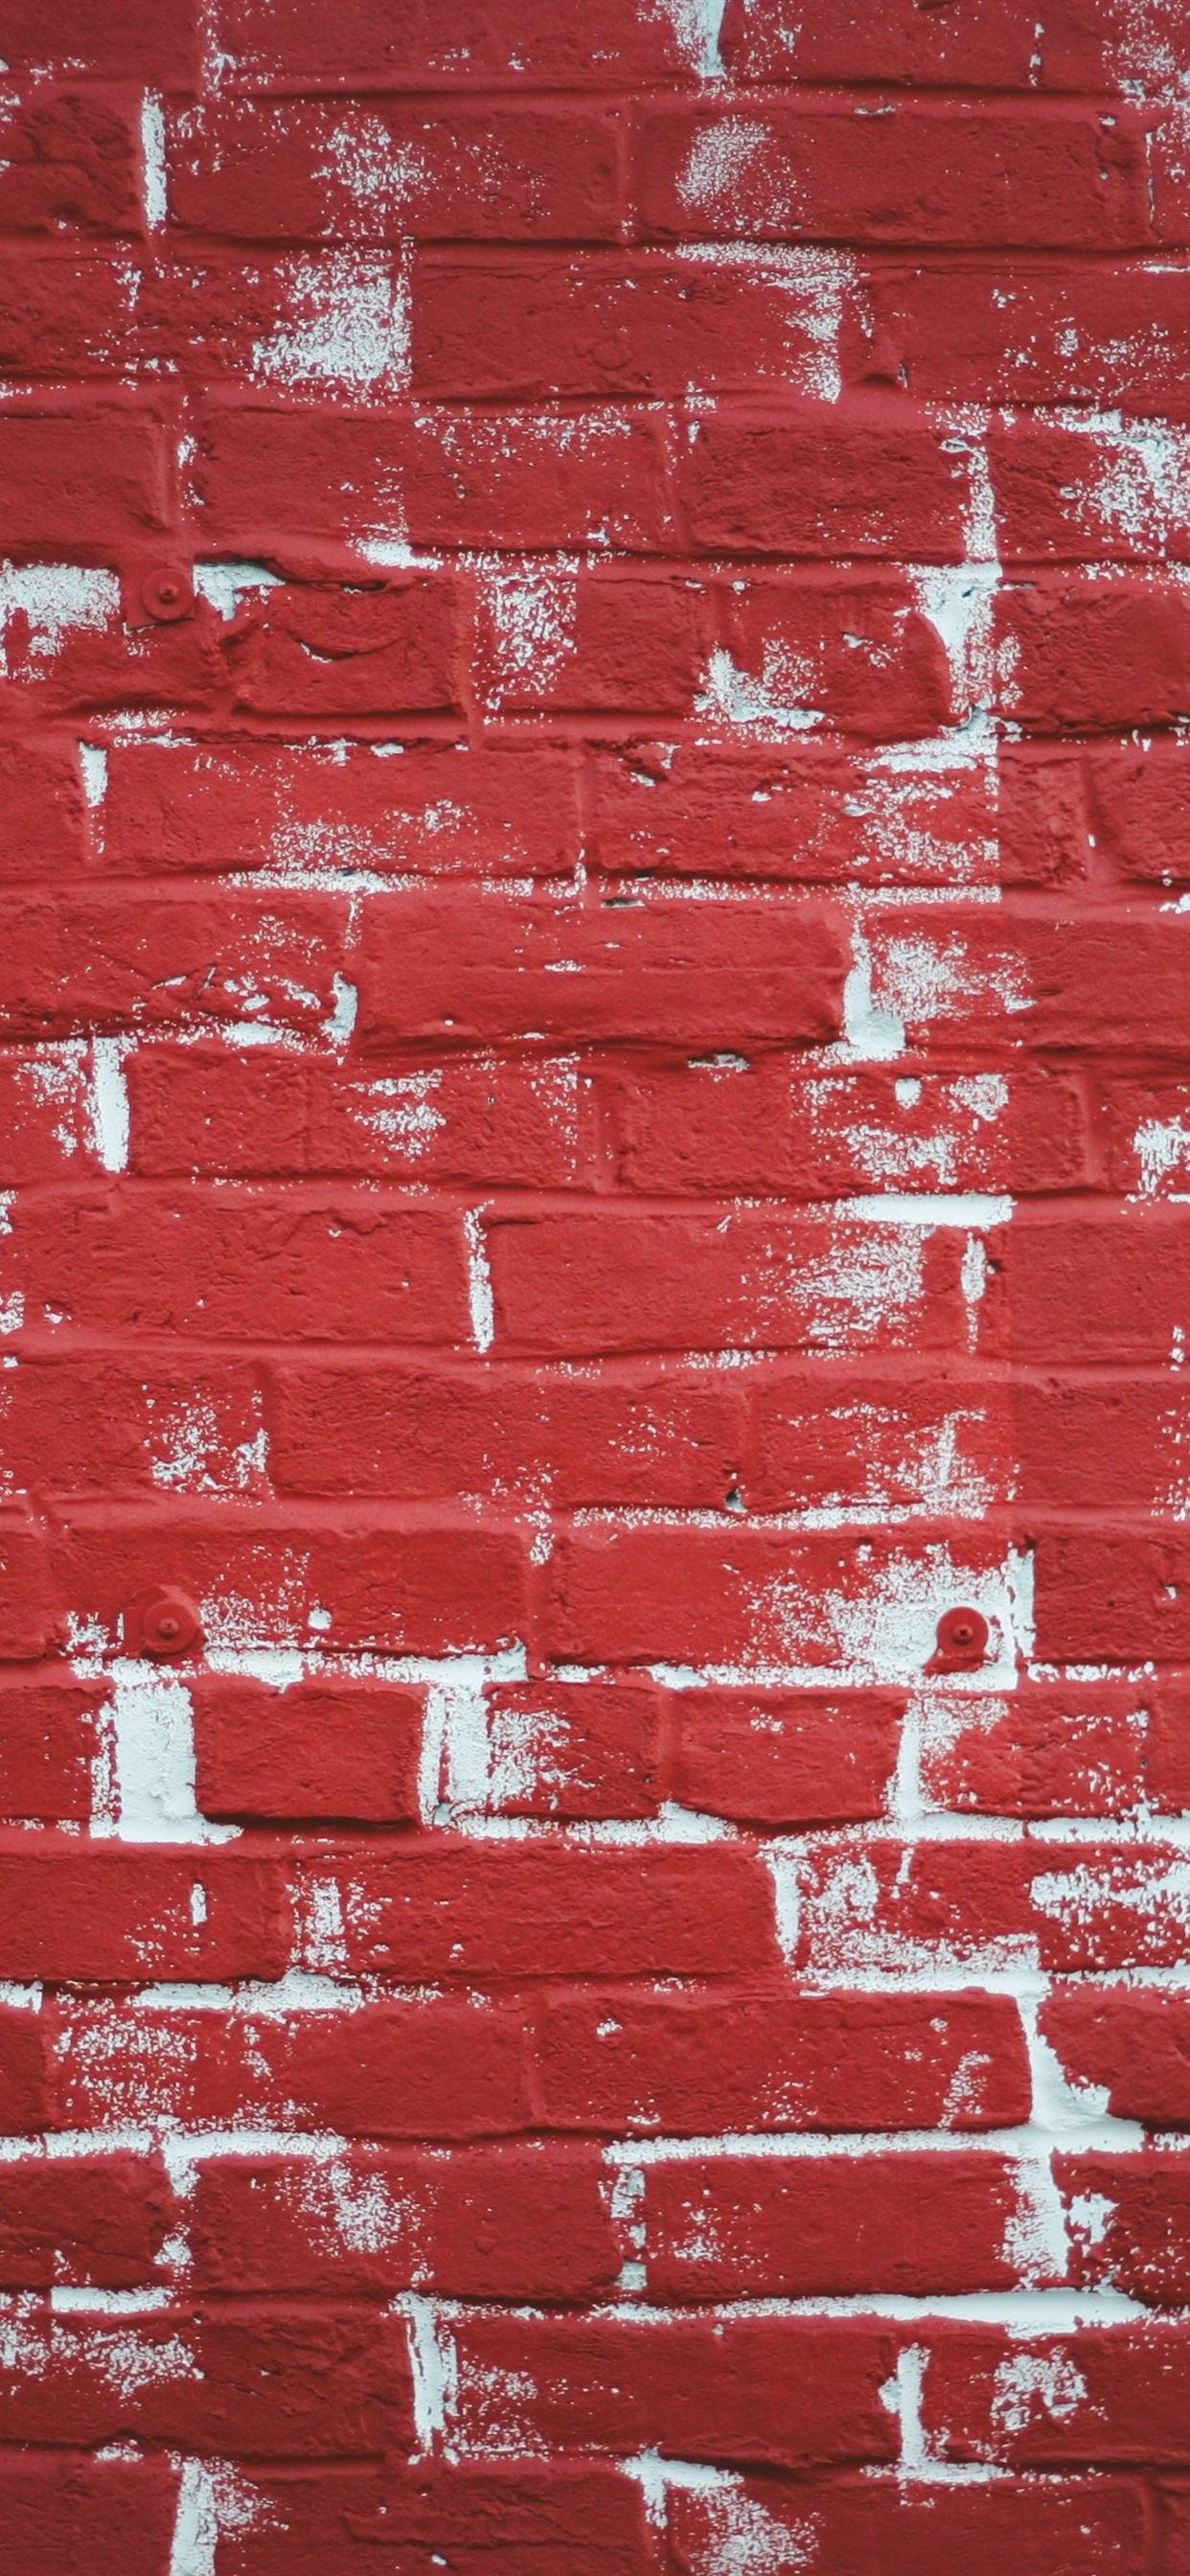 Red Bricks Wall, Texture 1242x2688 IPhone 11 Pro XS Max Wallpaper